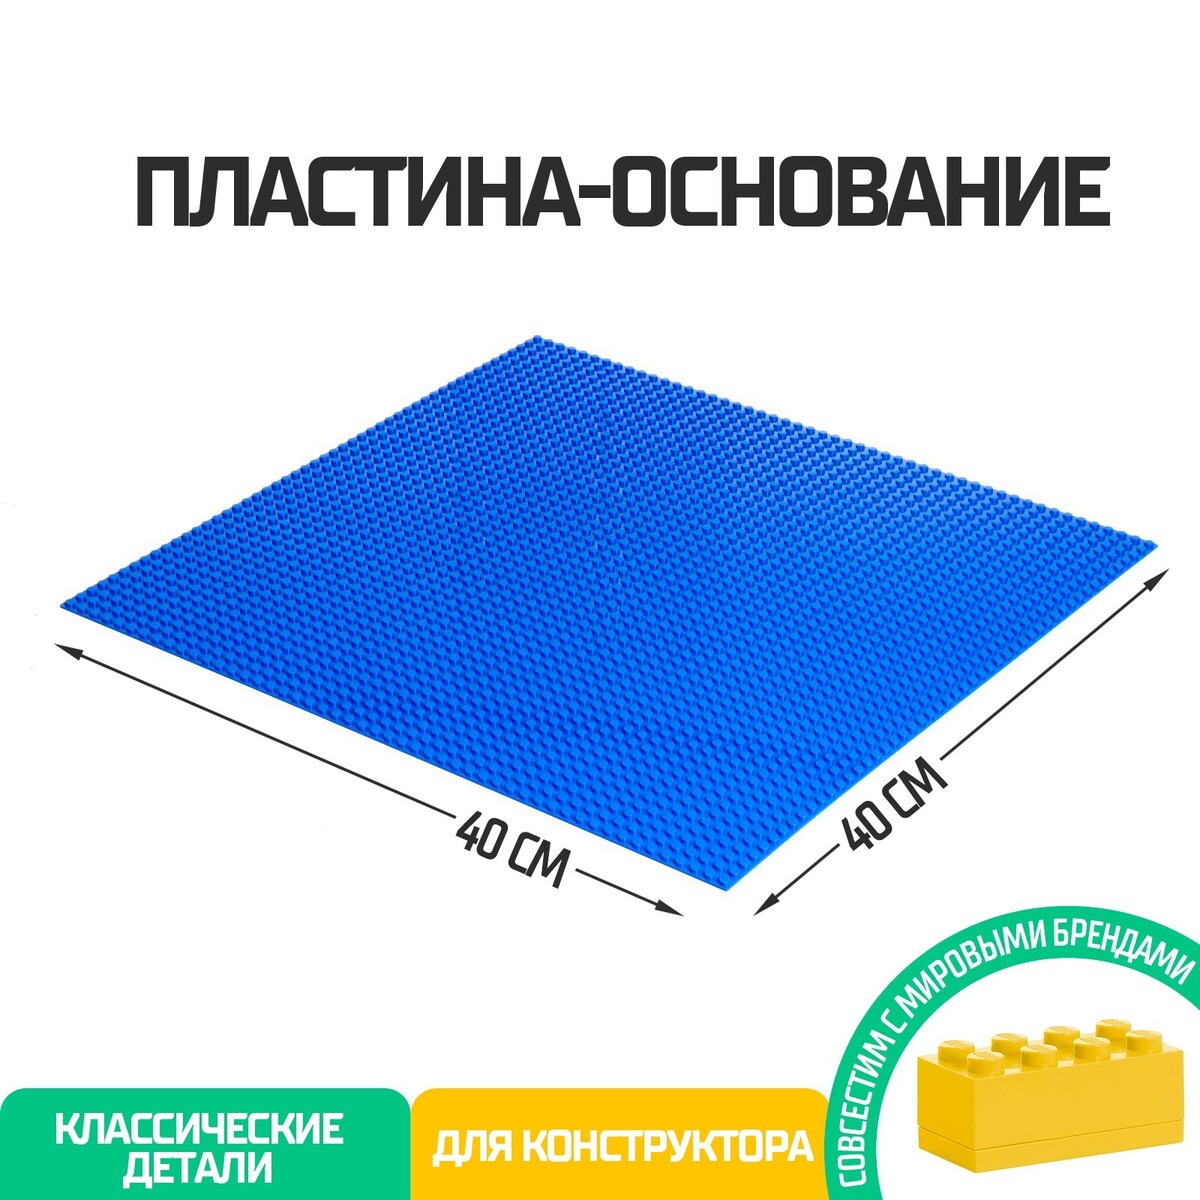 Пластина-основание для конструктора, 40 × 40 см, цвет синий пластина основание для конструктора 40 х 40 см зеленый